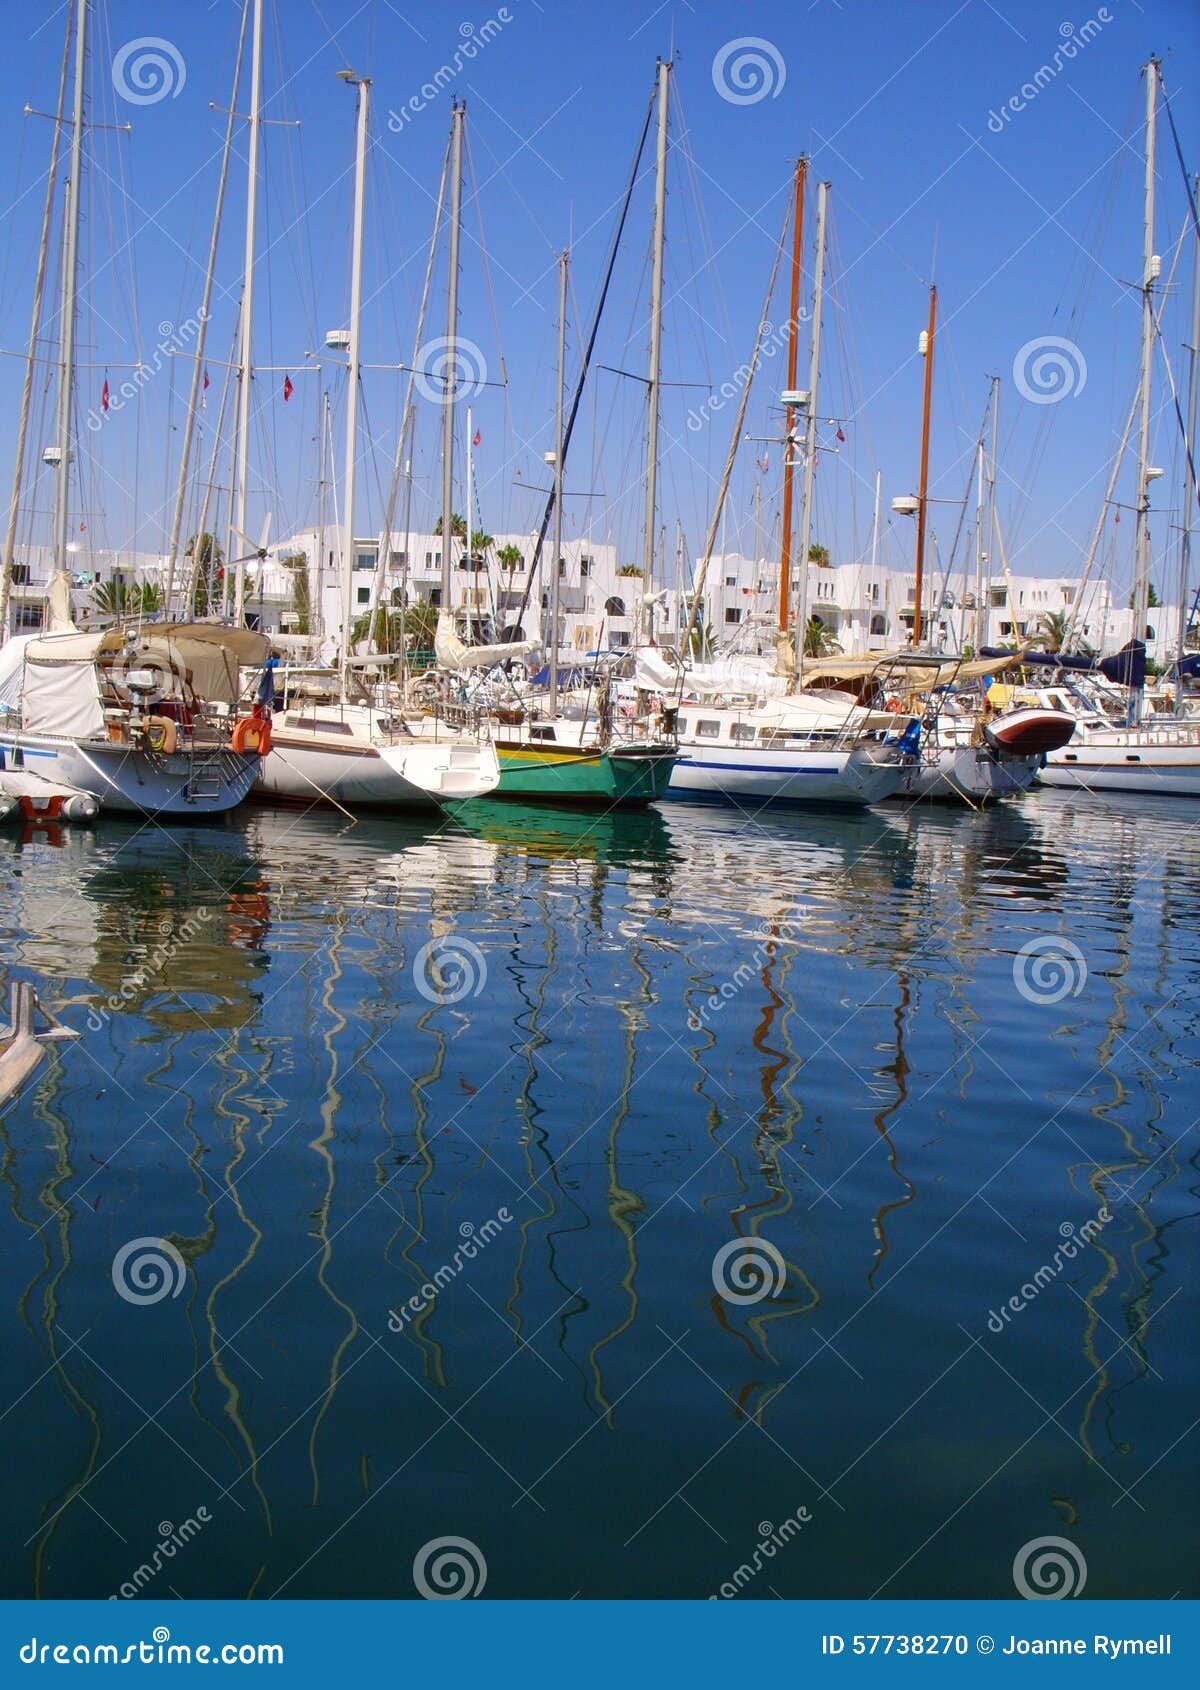 Reflexion von Yacht-Hafen-EL Kantaoui Marina Tunisia. Luxusyachten und ihre Maste reflektierten sich im tiefen blauen Wasser von Jachthafen Hafen-EL Kantaoui, Tunesien